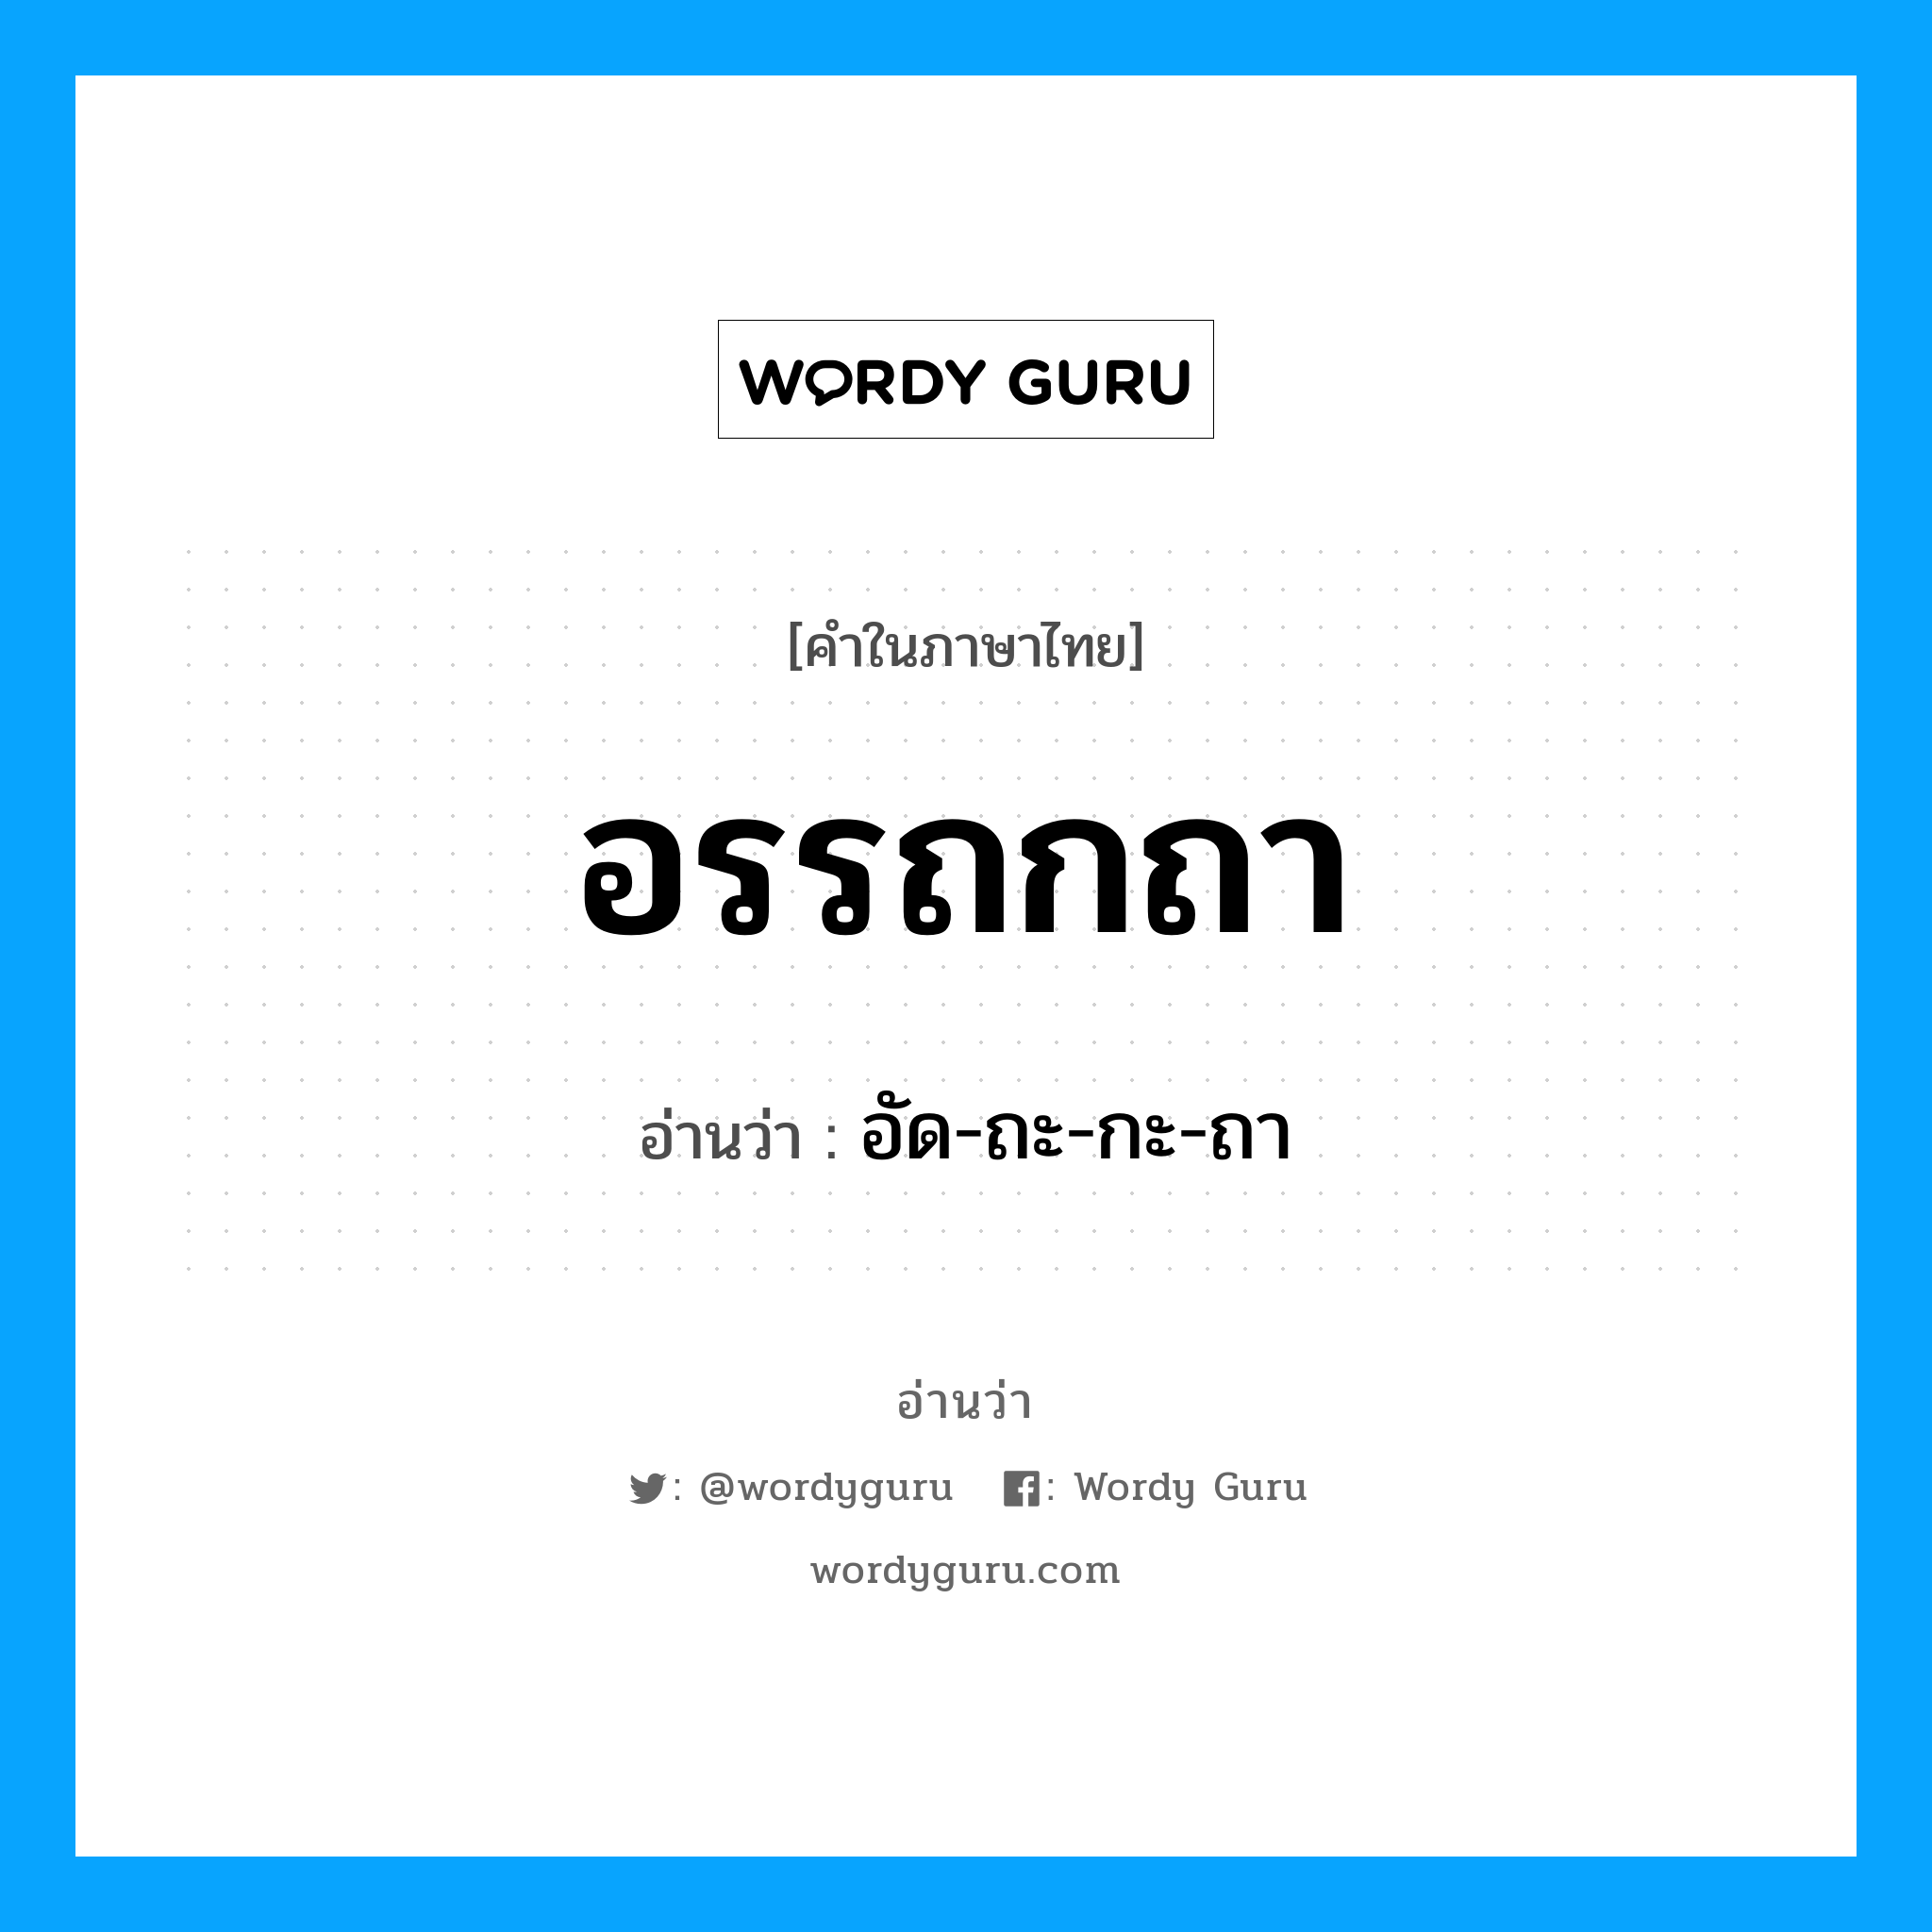 อัด-ถะ-กะ-ถา เป็นคำอ่านของคำไหน?, คำในภาษาไทย อัด-ถะ-กะ-ถา อ่านว่า อรรถกถา